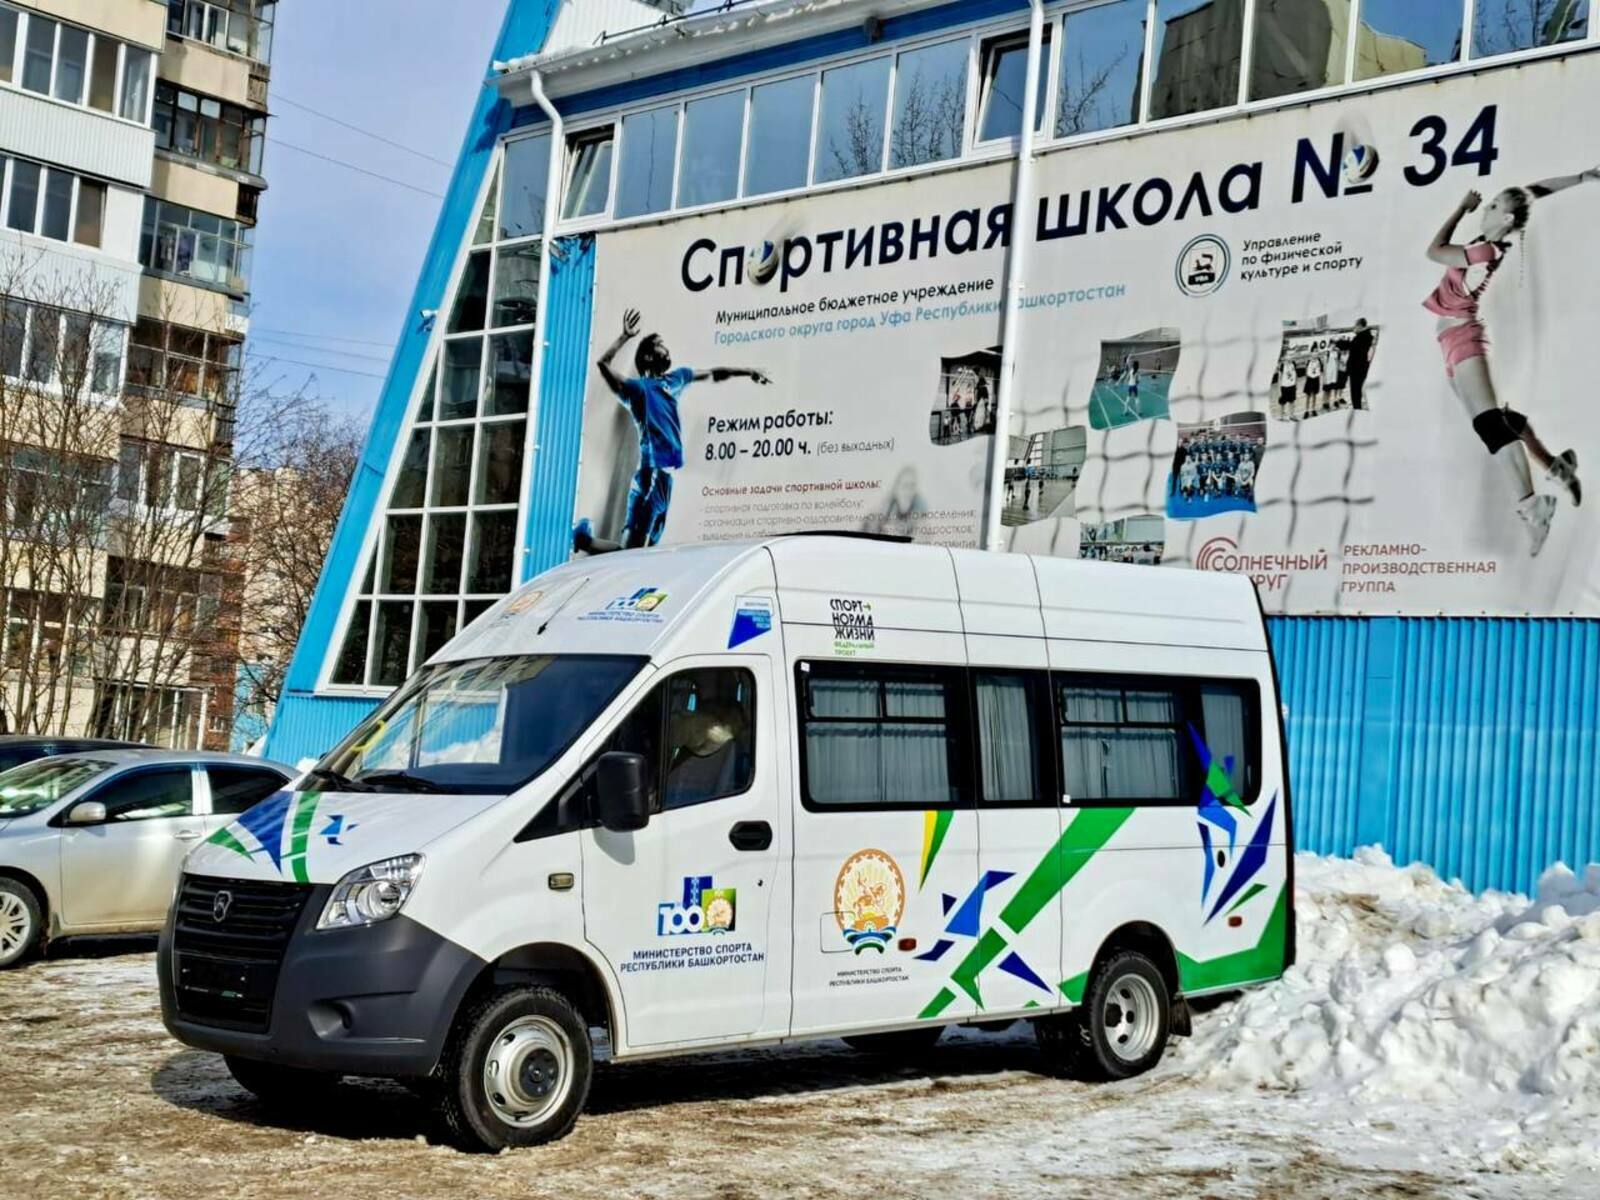 Өфөнөң спорт мәктәбенә - яңы автобус